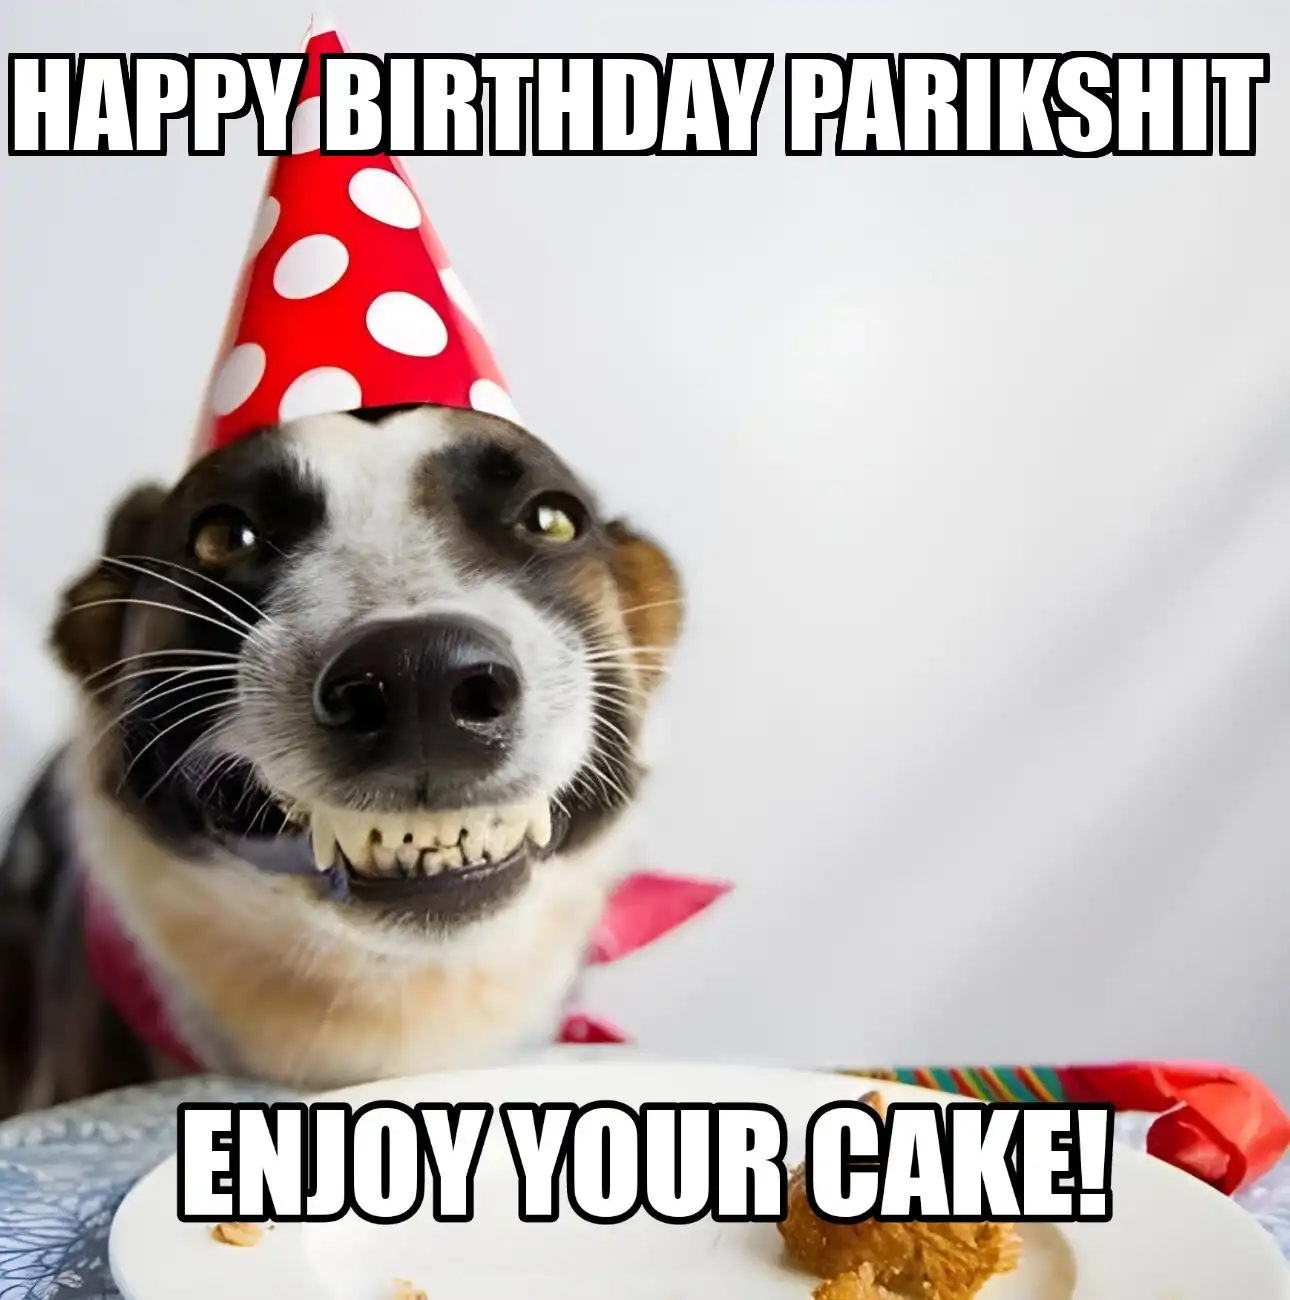 Happy Birthday Parikshit Enjoy Your Cake Dog Meme